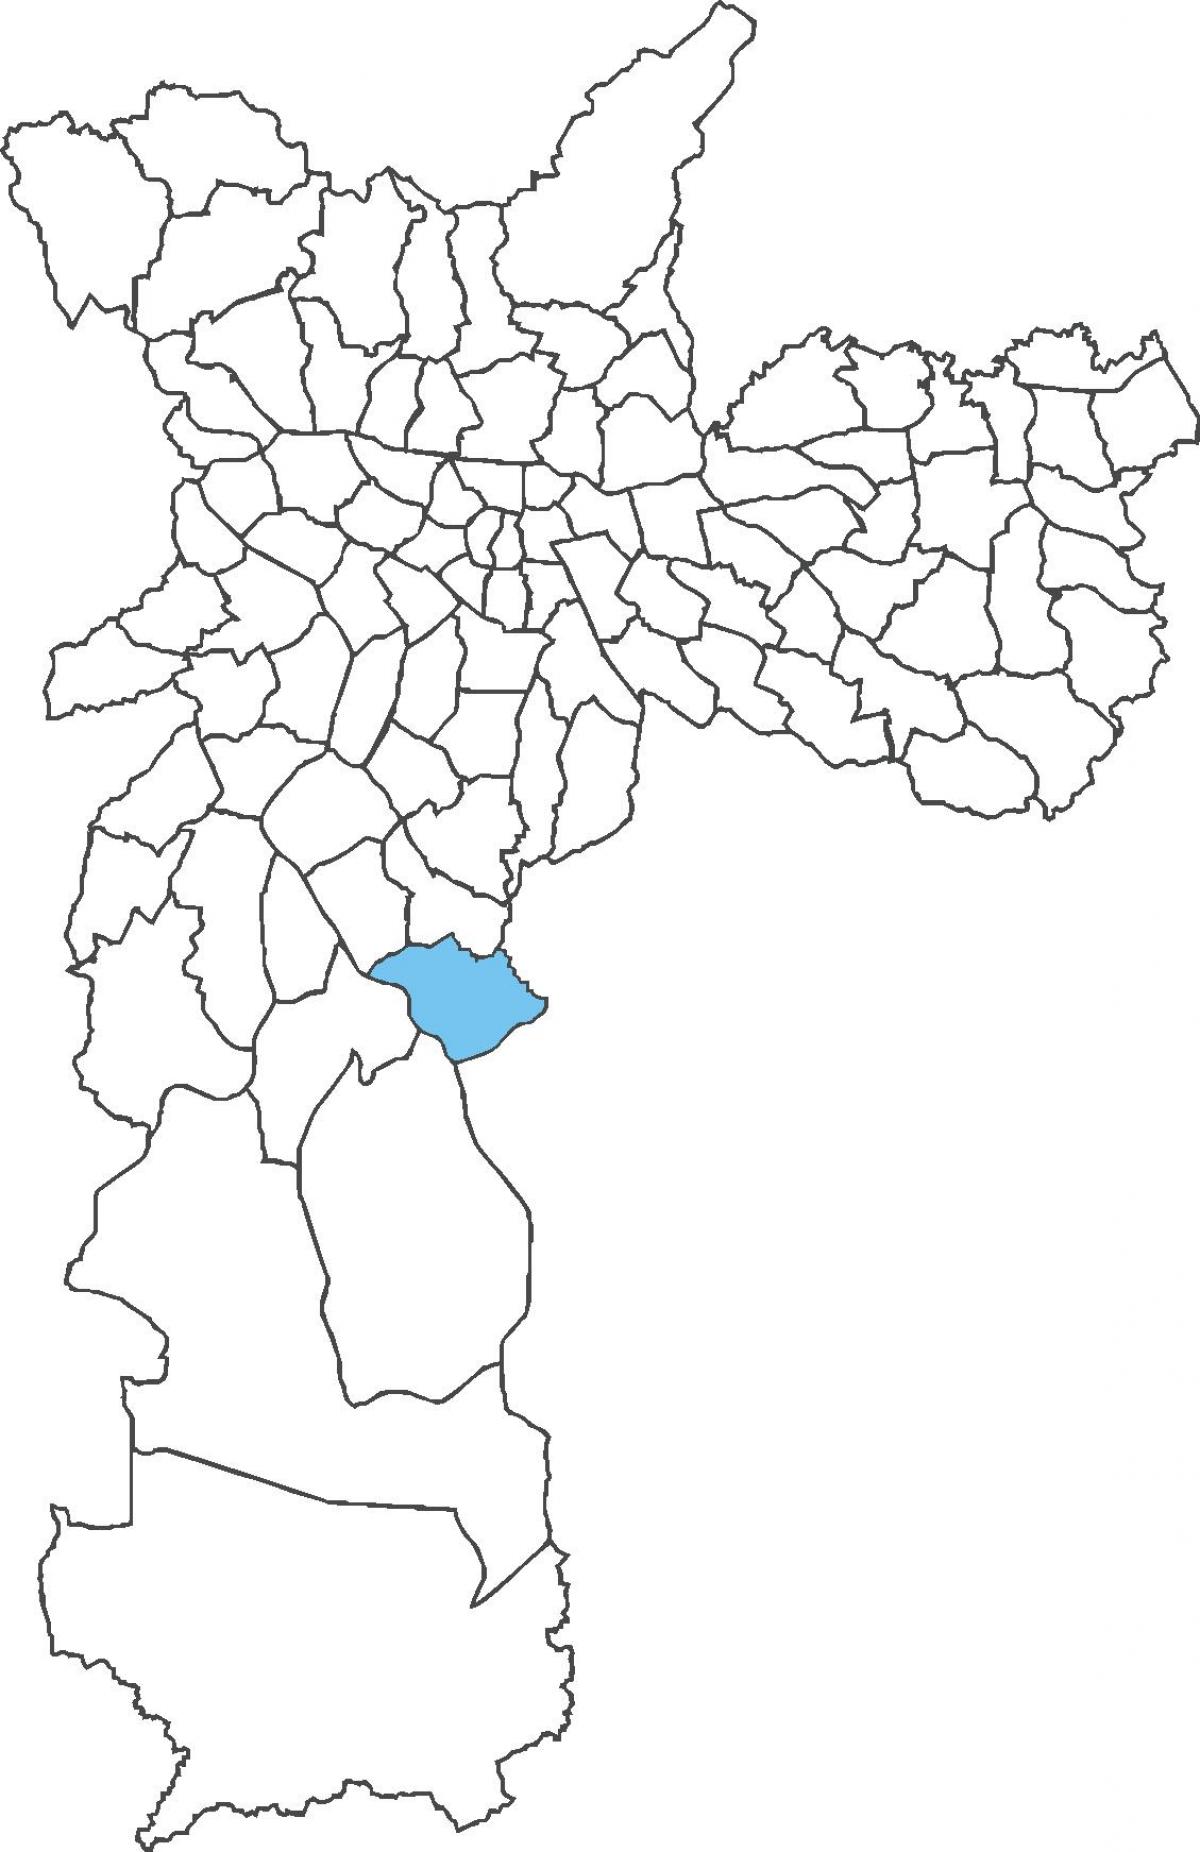 মানচিত্র Pedreira জেলা